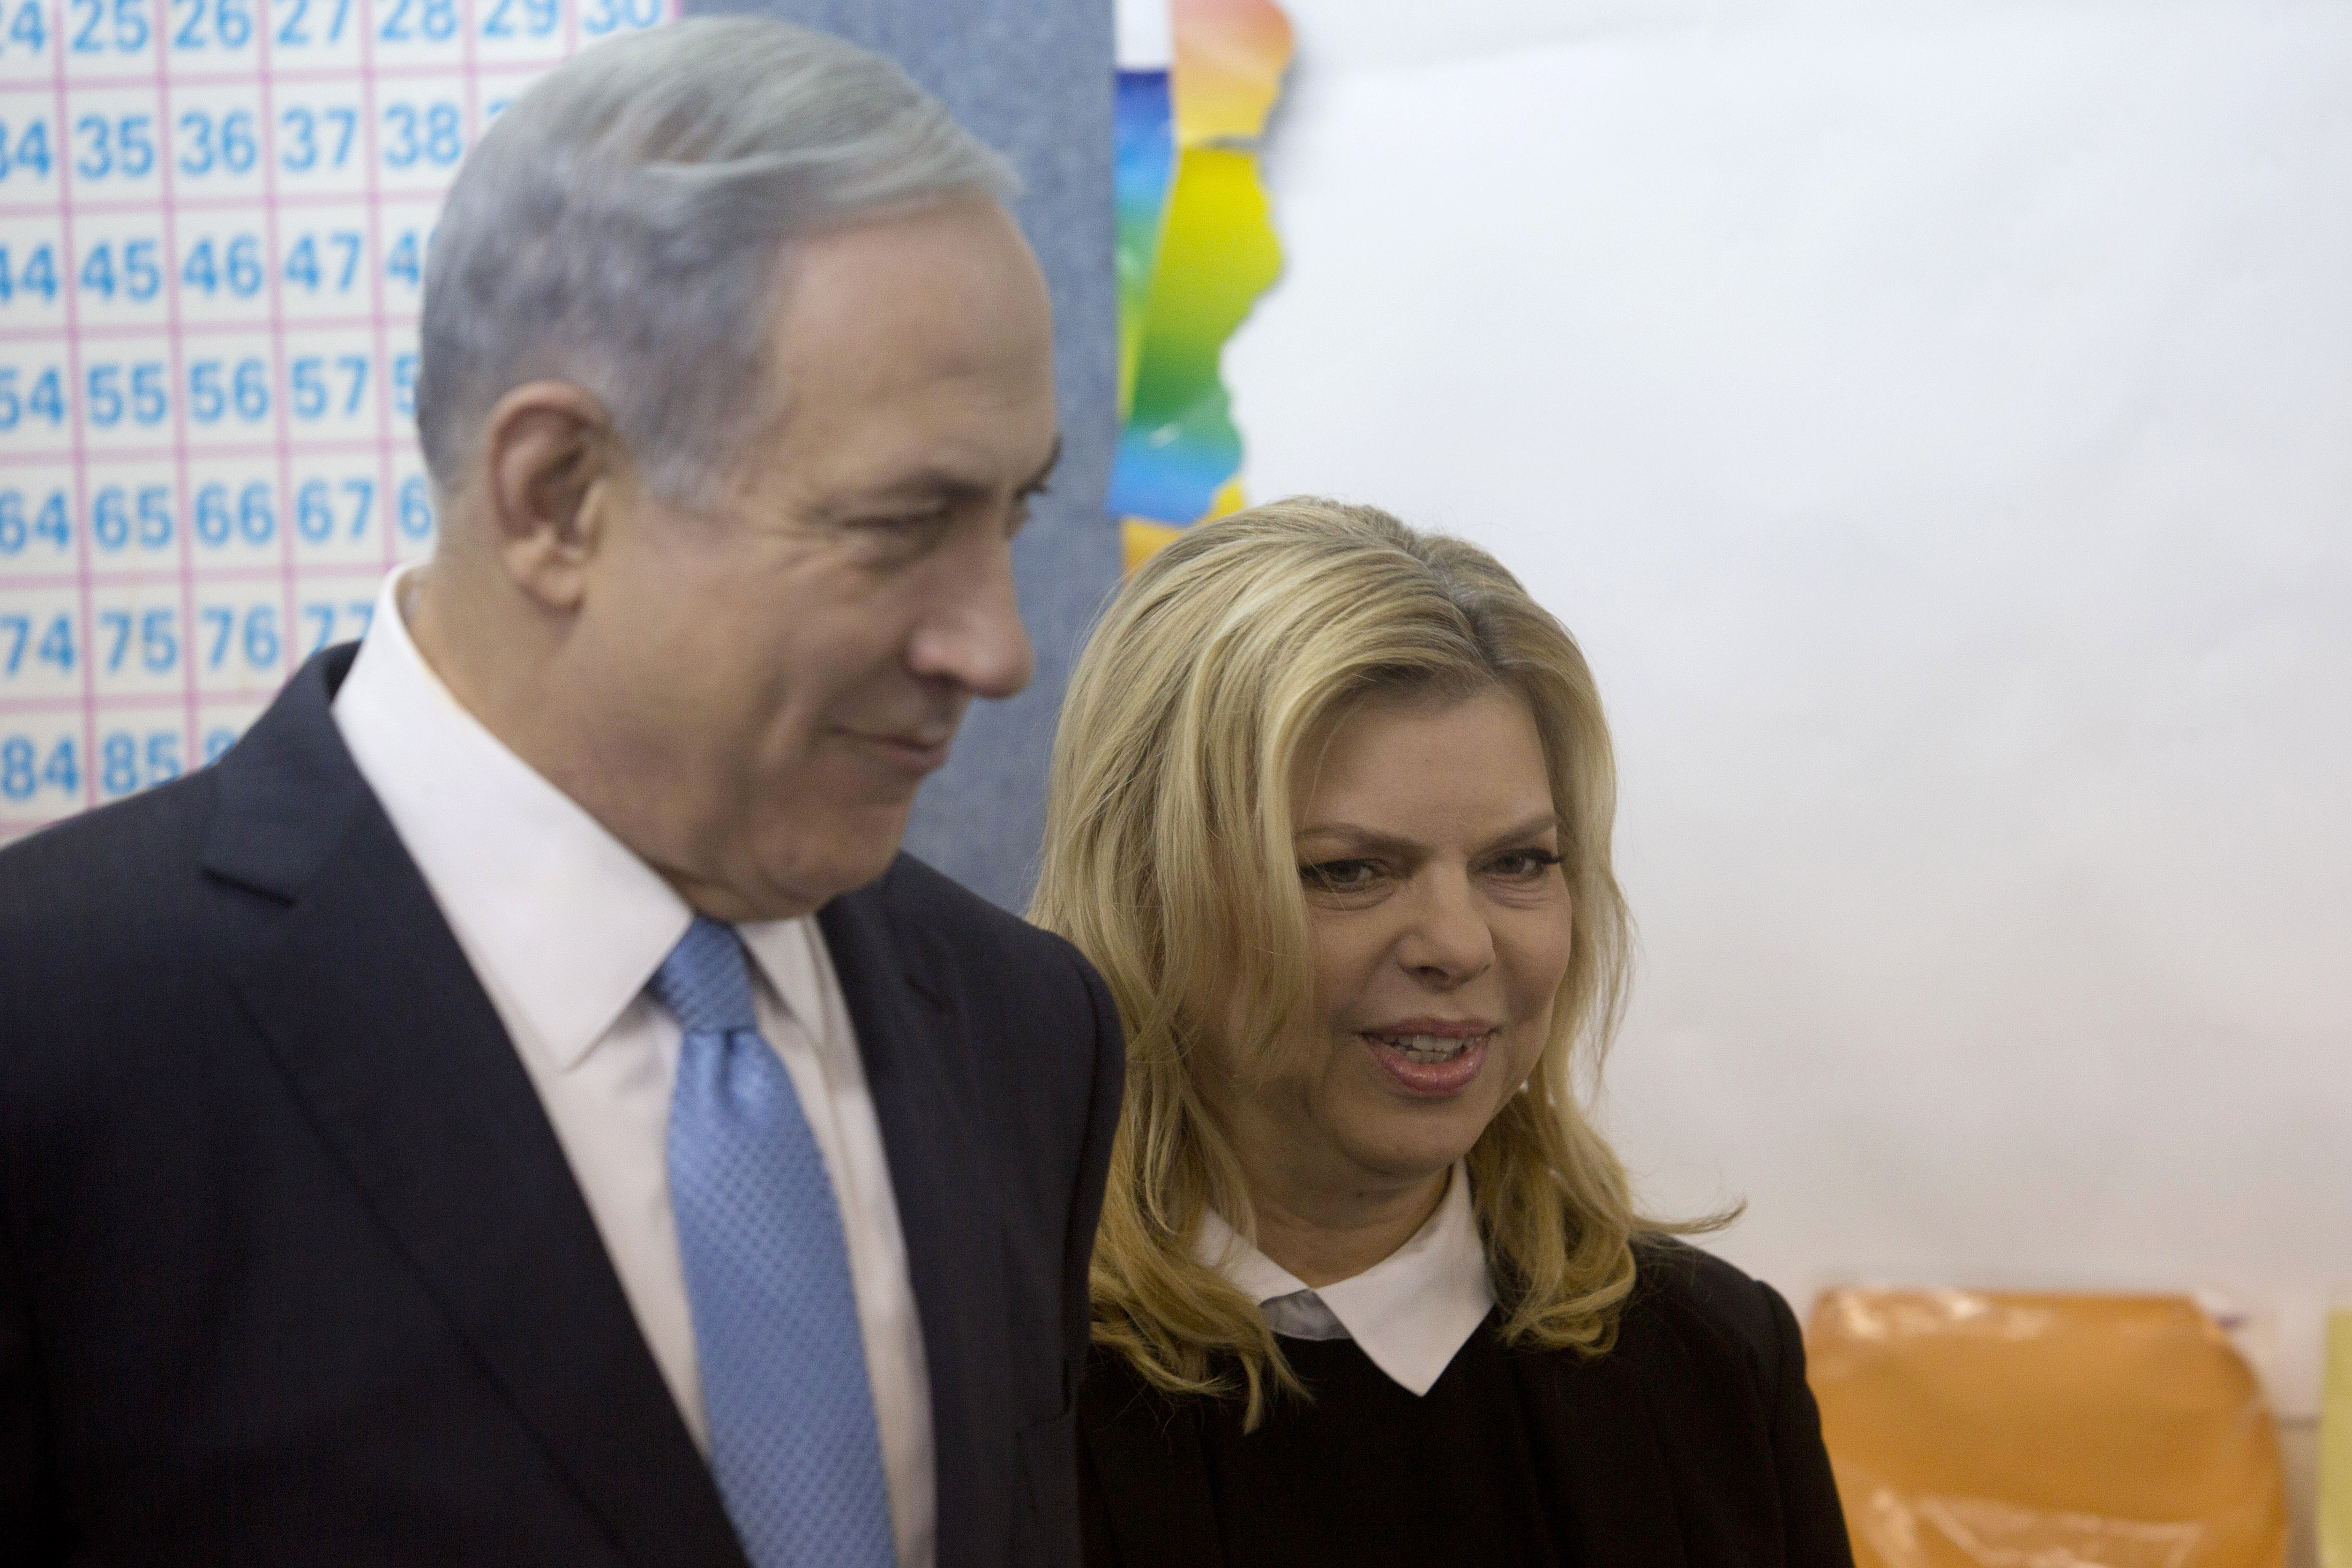 Reuters: Partidul lui Benjamin Netanyahu, Likud, la egalitate cu Uniunea Sionista, potrivit exit pollurilor